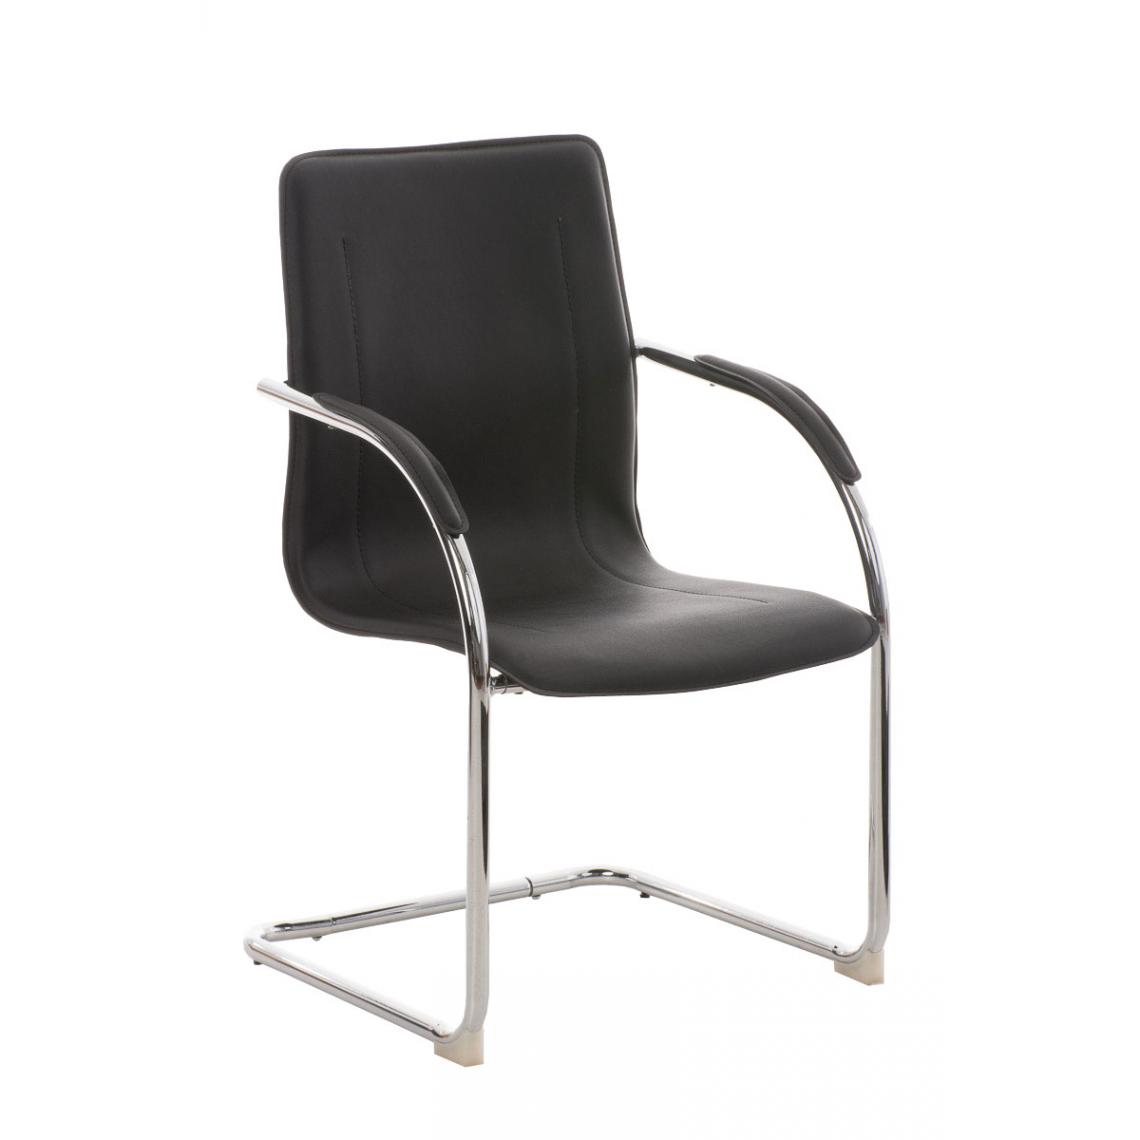 Icaverne - Moderne Chaise visiteur serie Rabat V2 couleur noir - Chaises